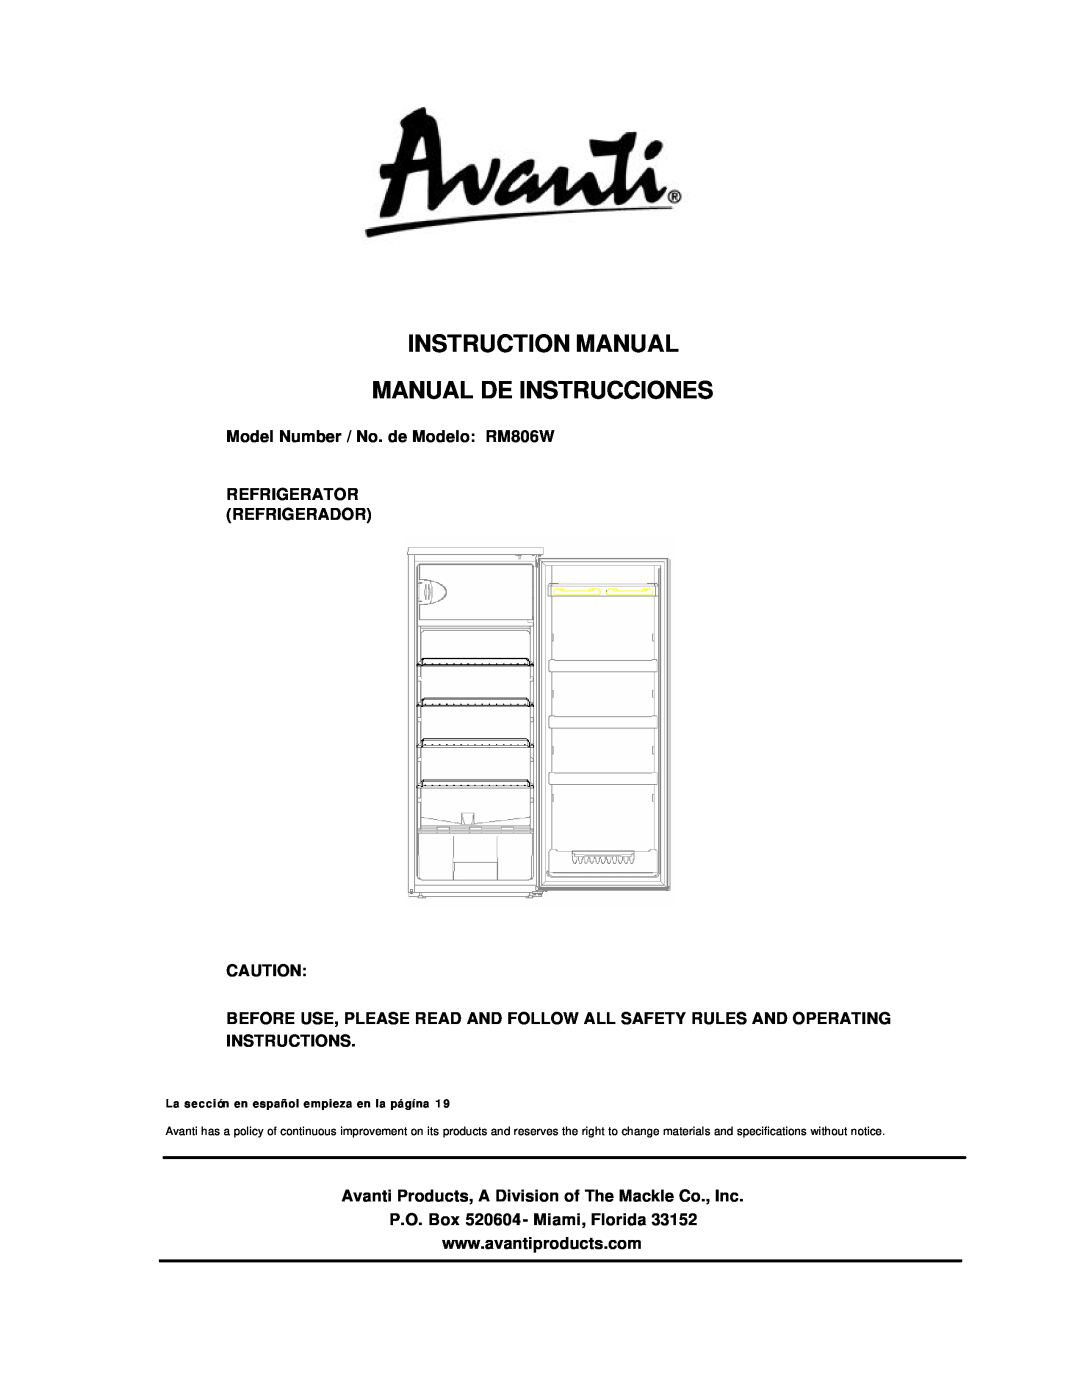 Avanti instruction manual Model Number / No. de Modelo: RM806W, Refrigerator Refrigerador 